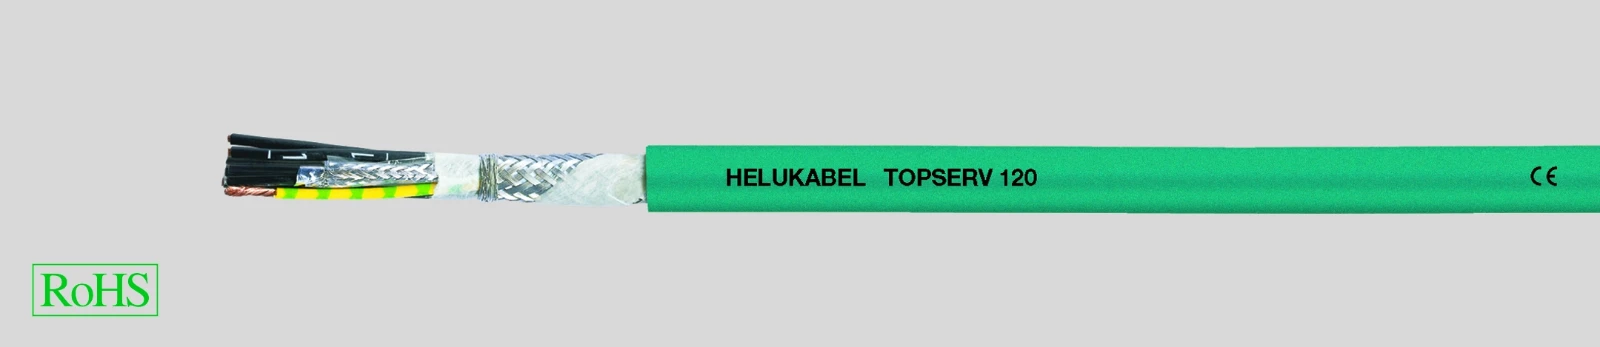 Helukabel Voedingskabel >= 1 kV, voor vaste aanleg TOPSERV® 110 / 120 / Feedback-Cable